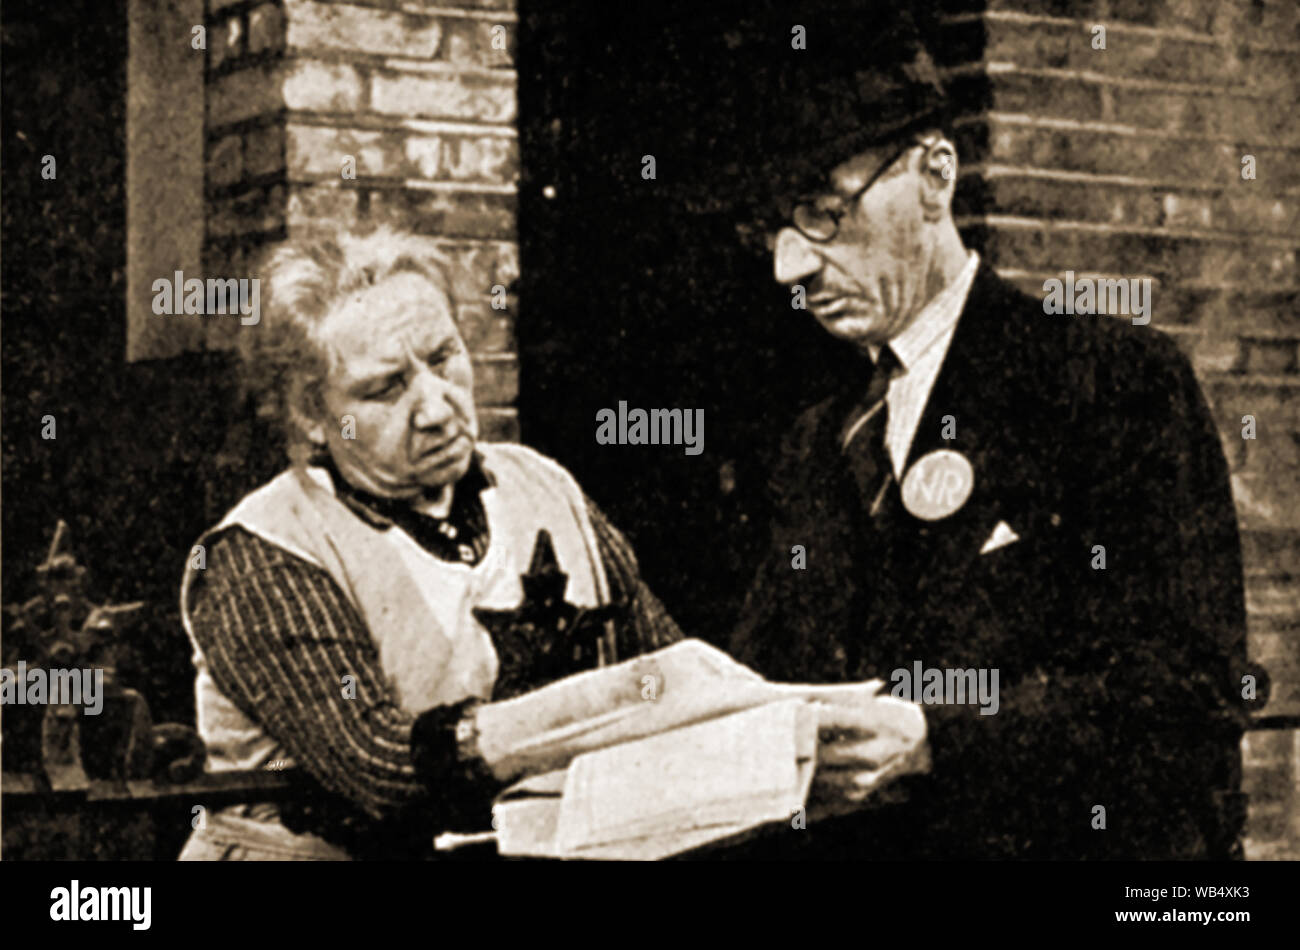 Ley de registro nacional de 1939 - Septiembre de 1939 - Un enumerador visita un hogar en el Reino Unido para entregar un formulario de inscripción obligatoria a un dueño de casa. Día nacional de registro fue el 29 de septiembre de 1939 . Un sistema de tarjetas de identidad fue introducido. La Ley de Registro Nacional de 1939 fue derogada el 22 de mayo de 1952 Foto de stock